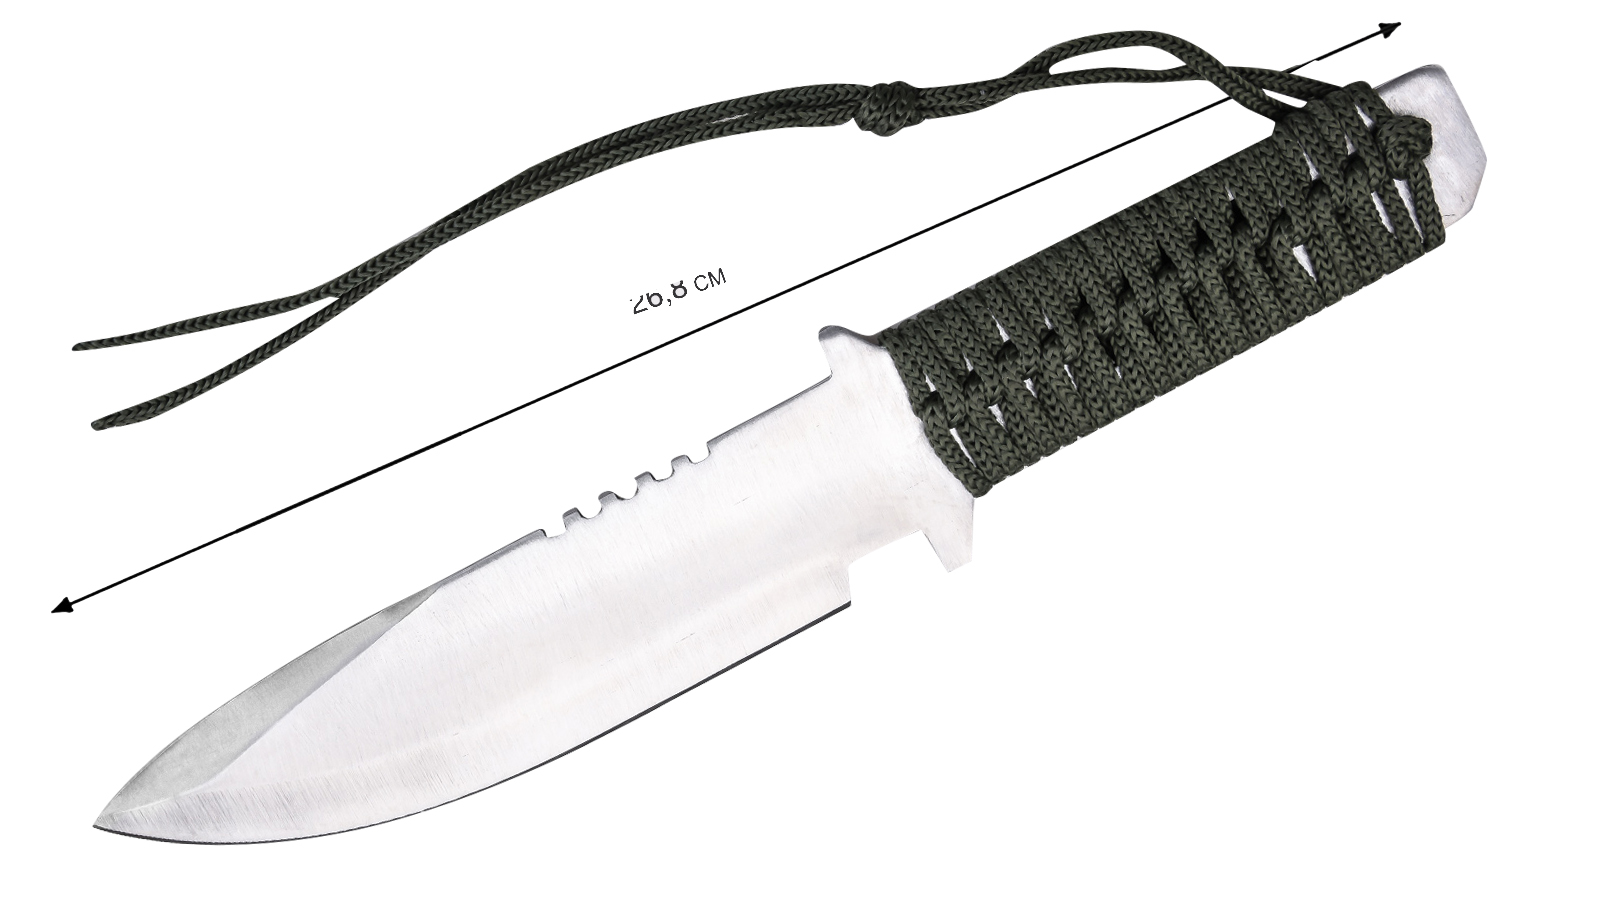 Купить походный нож для выживания по специальной цене